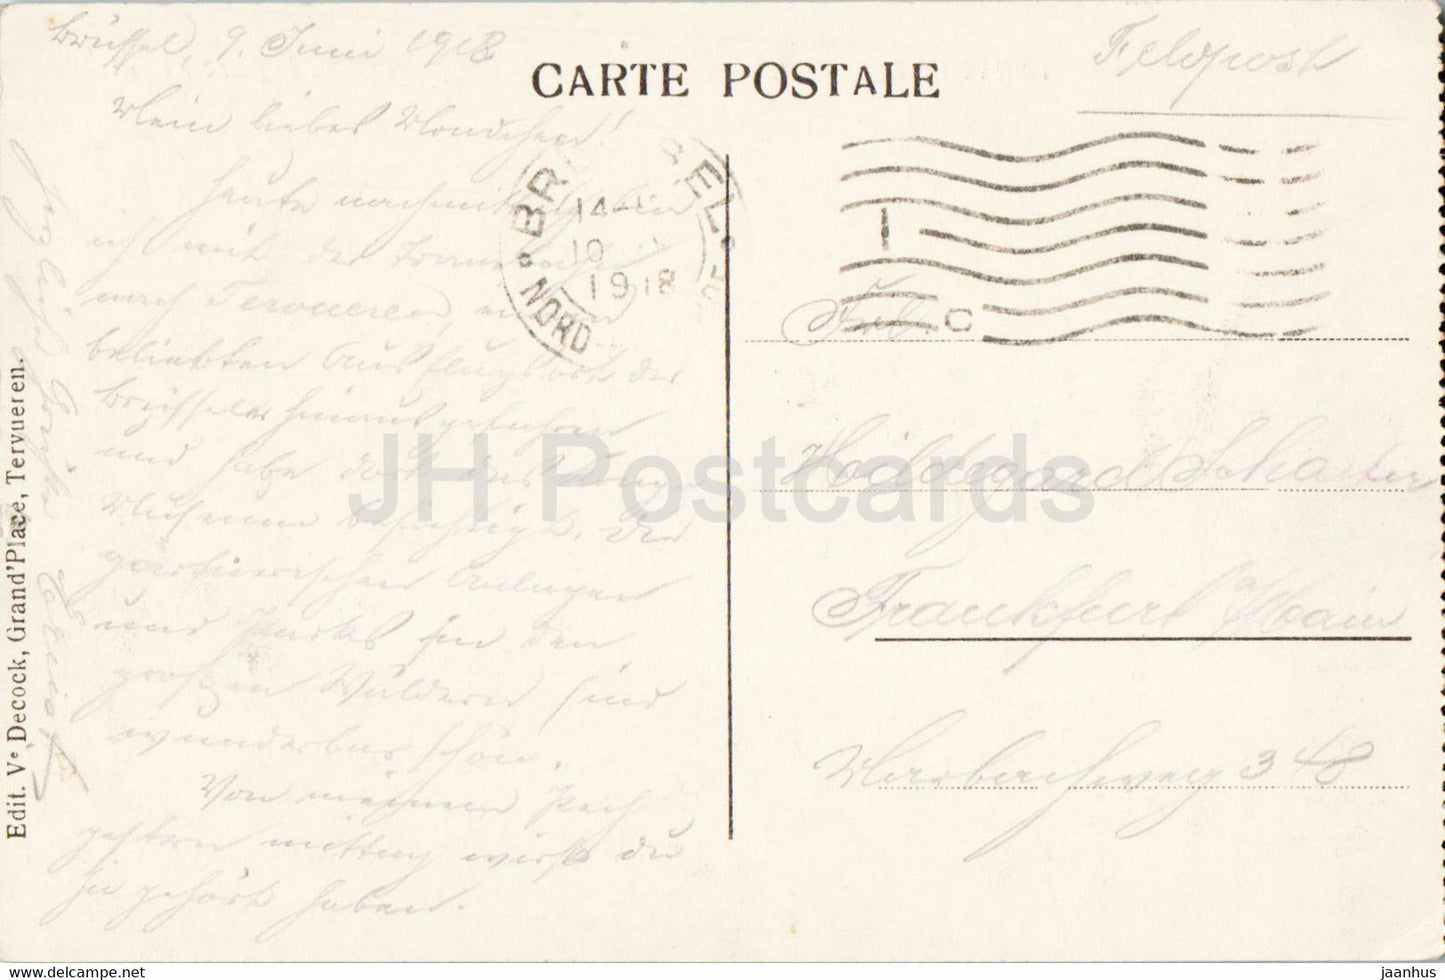 Tervueren - Tervuren - Les Grands Bassins et le pont dans le parc Royal - alte Postkarte - 1918 - Belgien - gebraucht